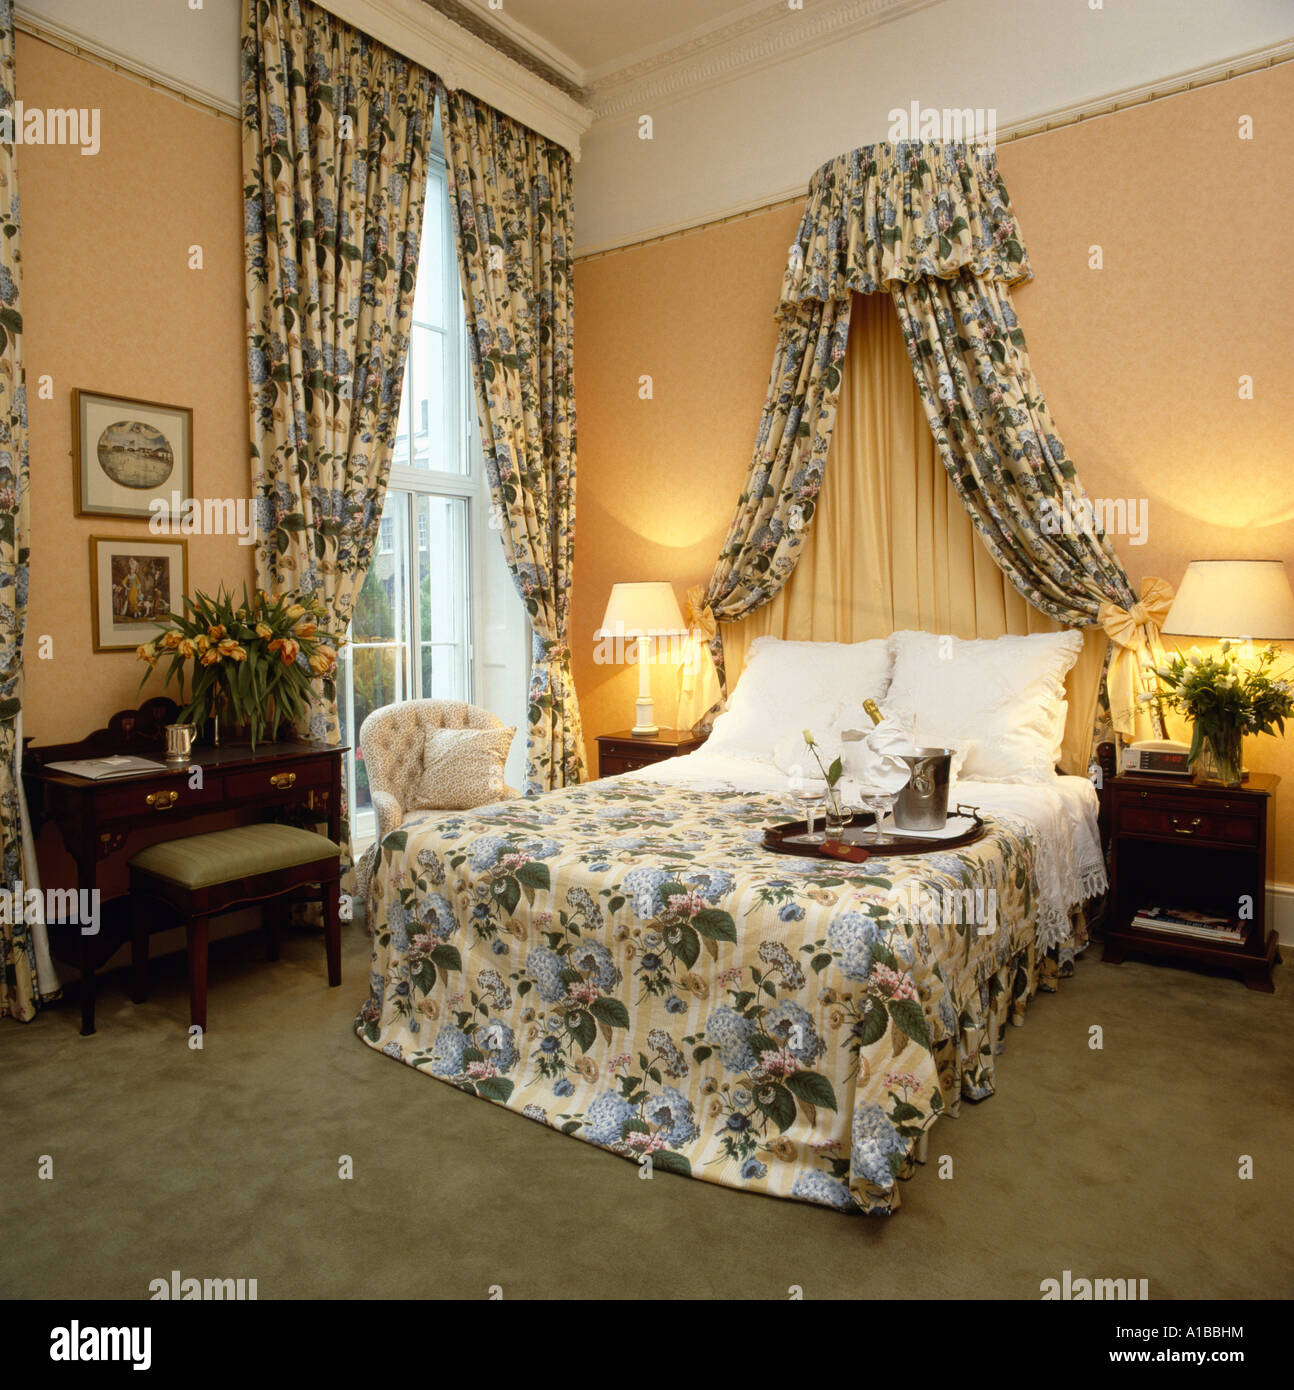 Les lampes allumées à côté de lit avec des rideaux assortis, coronet et  couvre-lit Photo Stock - Alamy